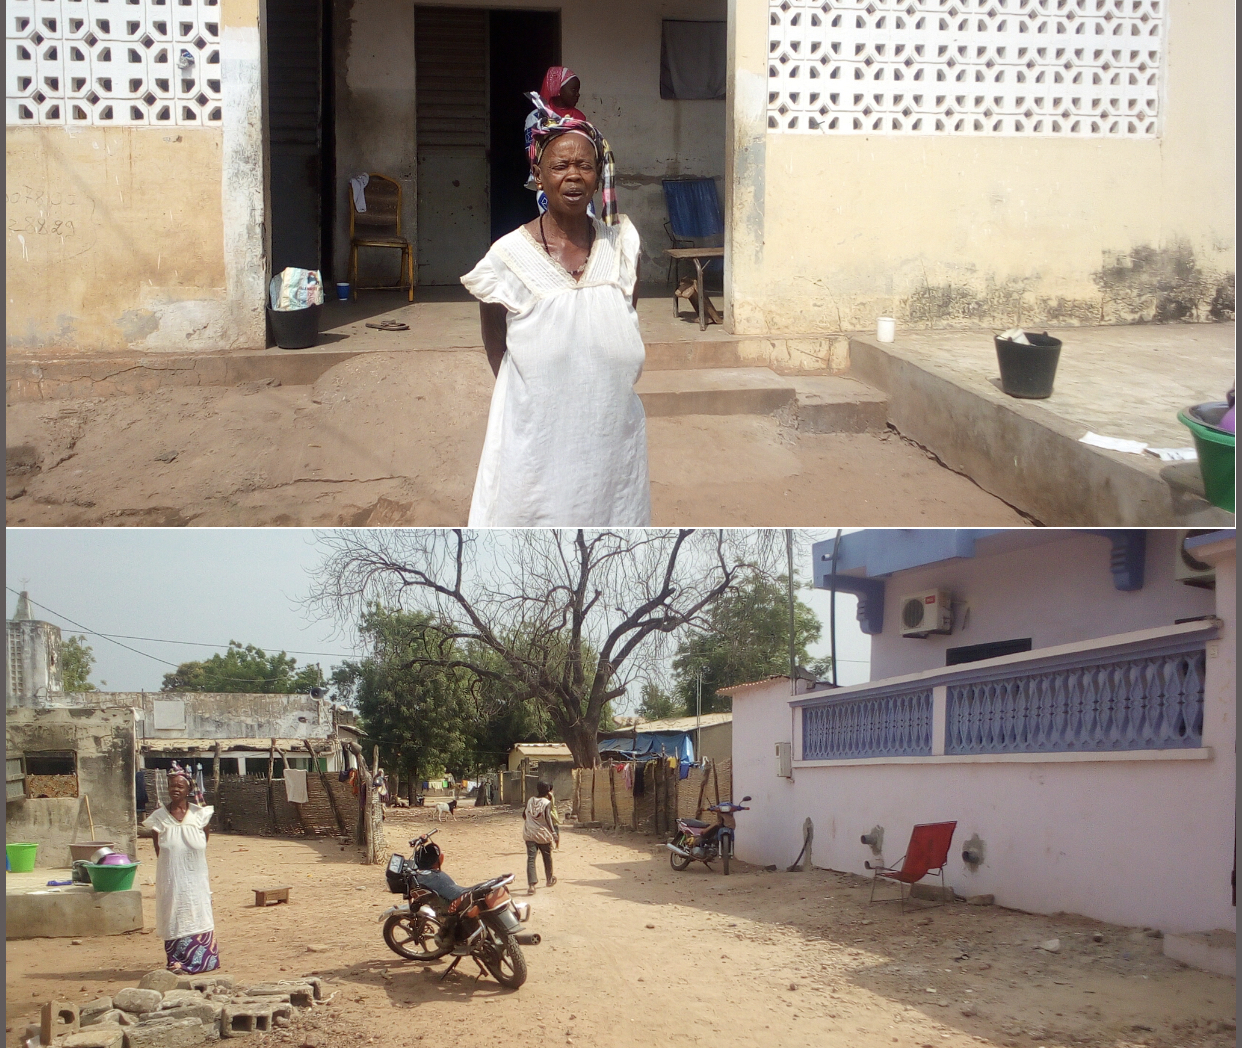 Confidences de Safiatou Sané, habitante du village de reclassement des lépreux de Kolda : « Le lotissement de notre village de reclassement nous a tous traumatisés... J’interpelle Macky Sall en personne pour qu'il nous vienne en aide… »